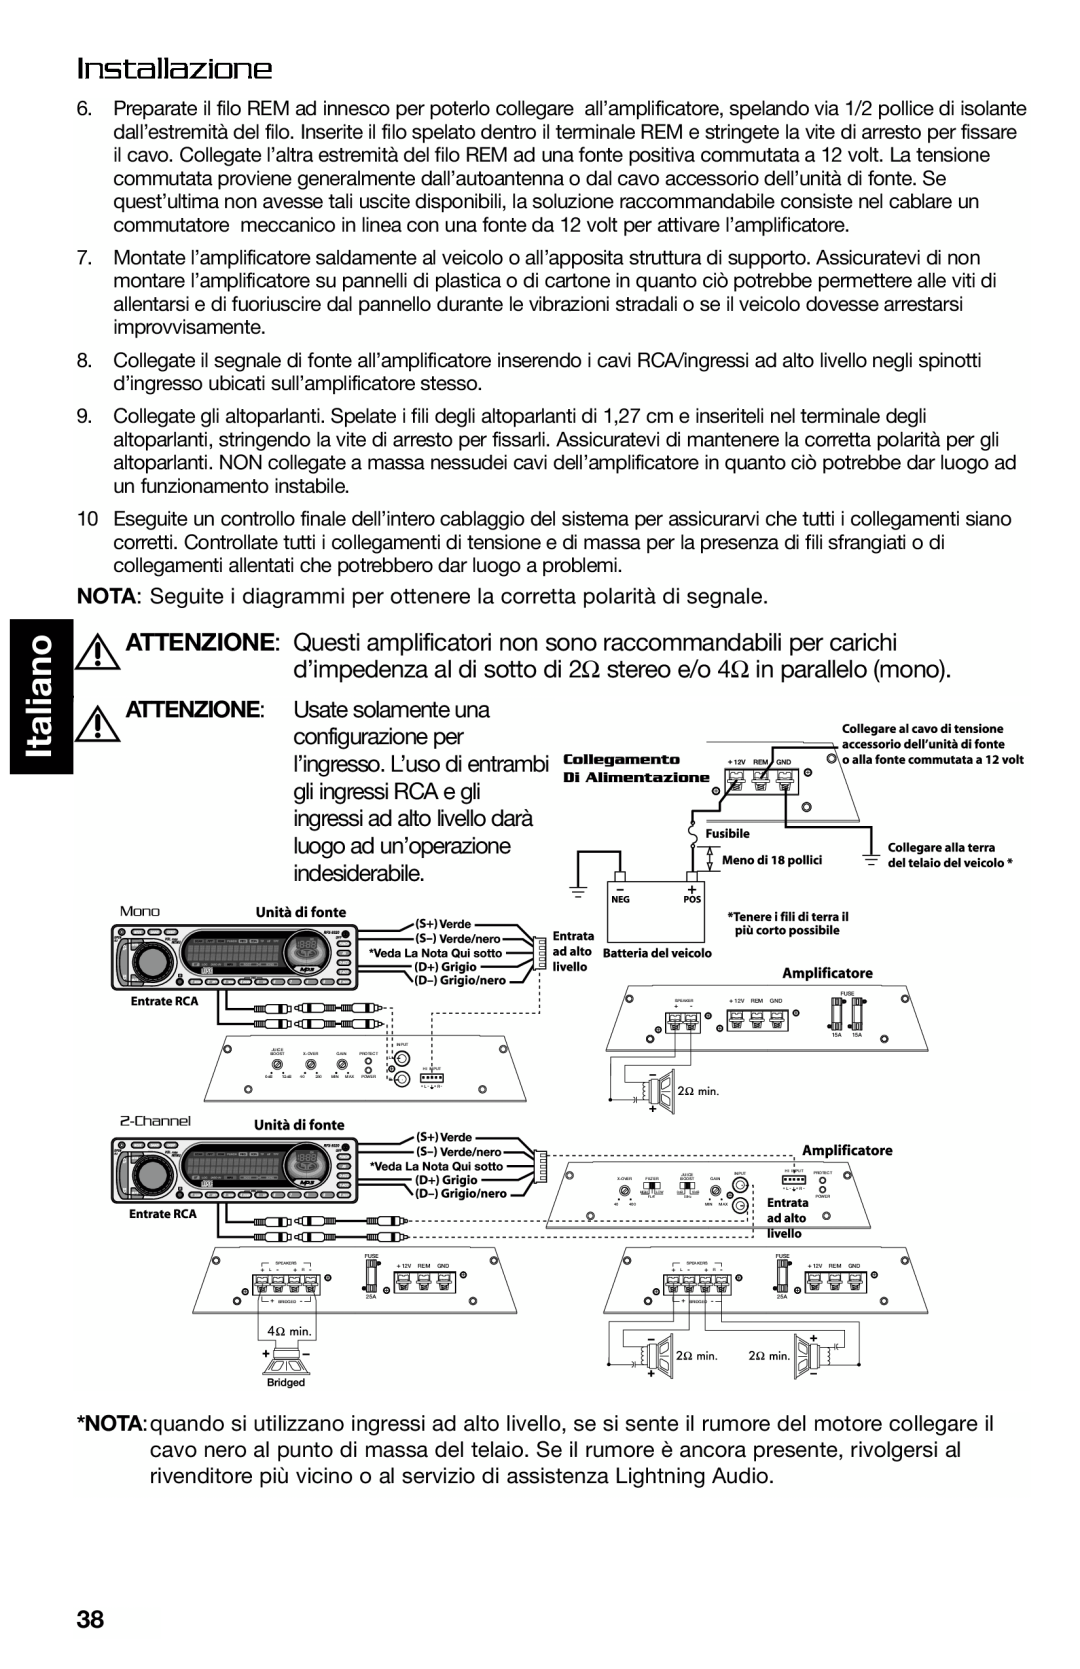 Lightning Audio FF250.1, FF150.2 manual Italiano, Installazione, Attenzione 